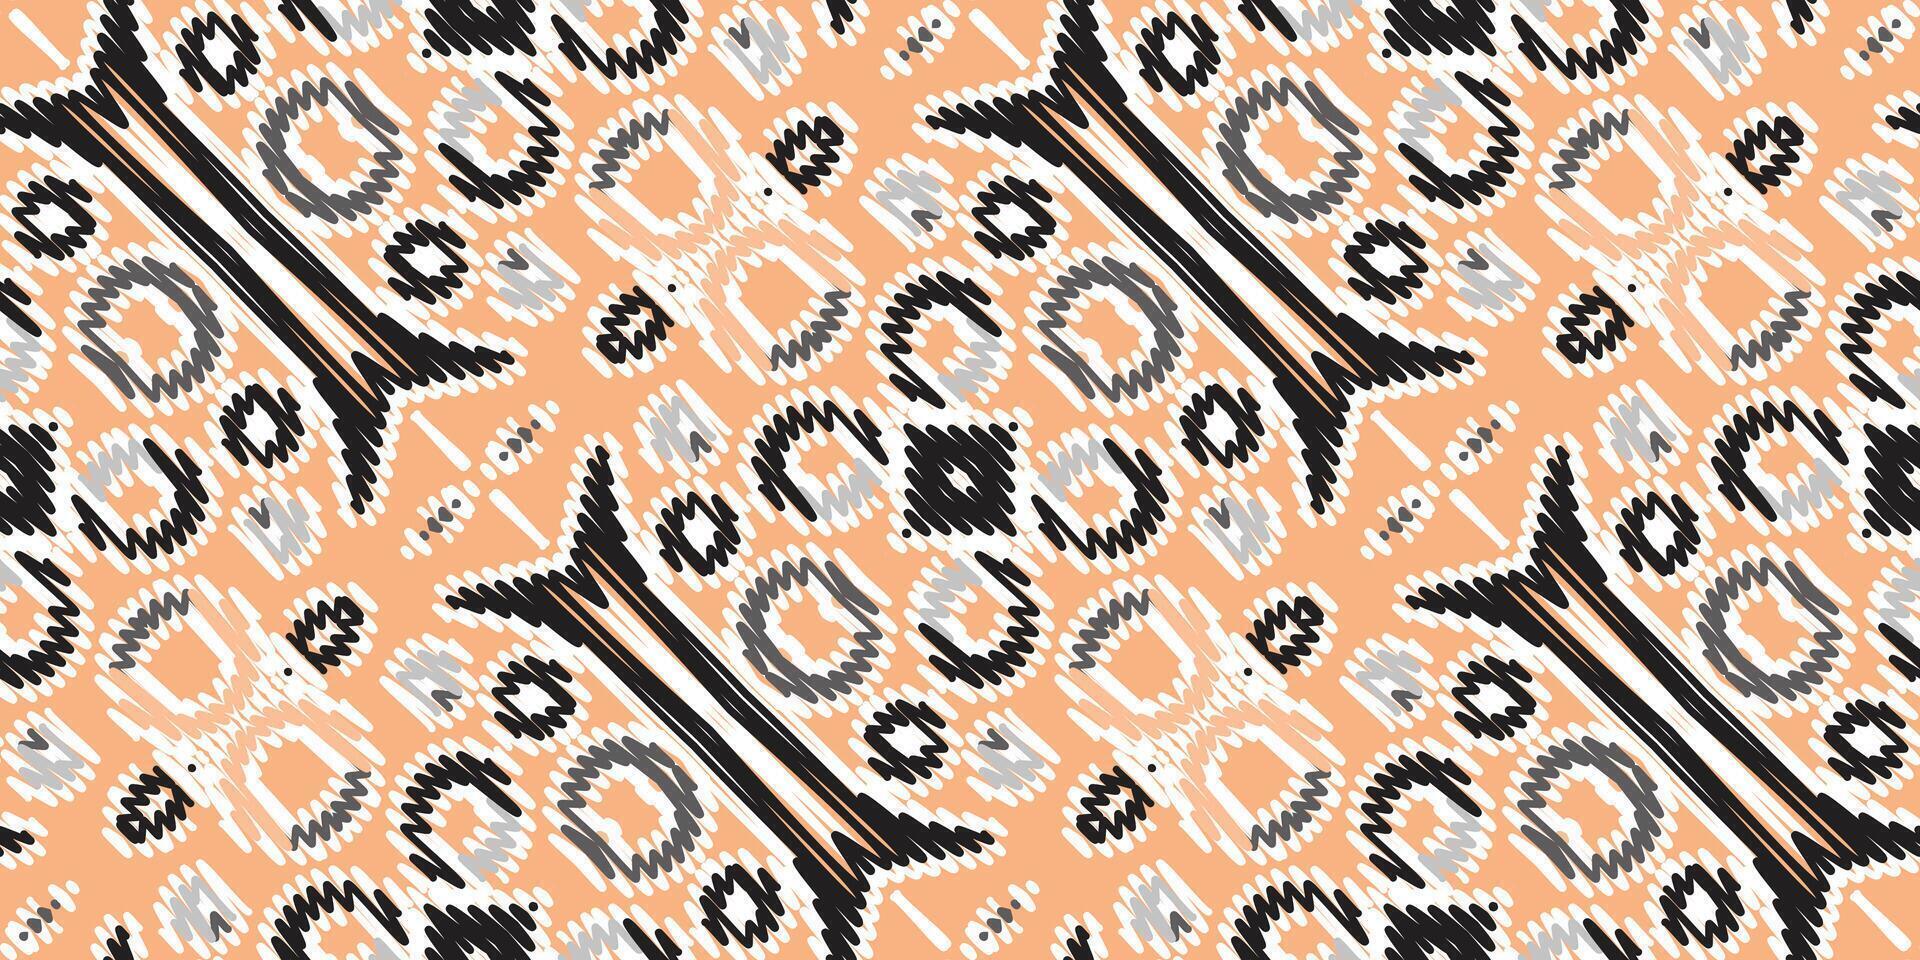 Corbata colorante modelo sin costura pañuelo impresión seda motivo bordado, ikat bordado vector diseño para impresión textura tela sari sari alfombra. kurta vector patola sari